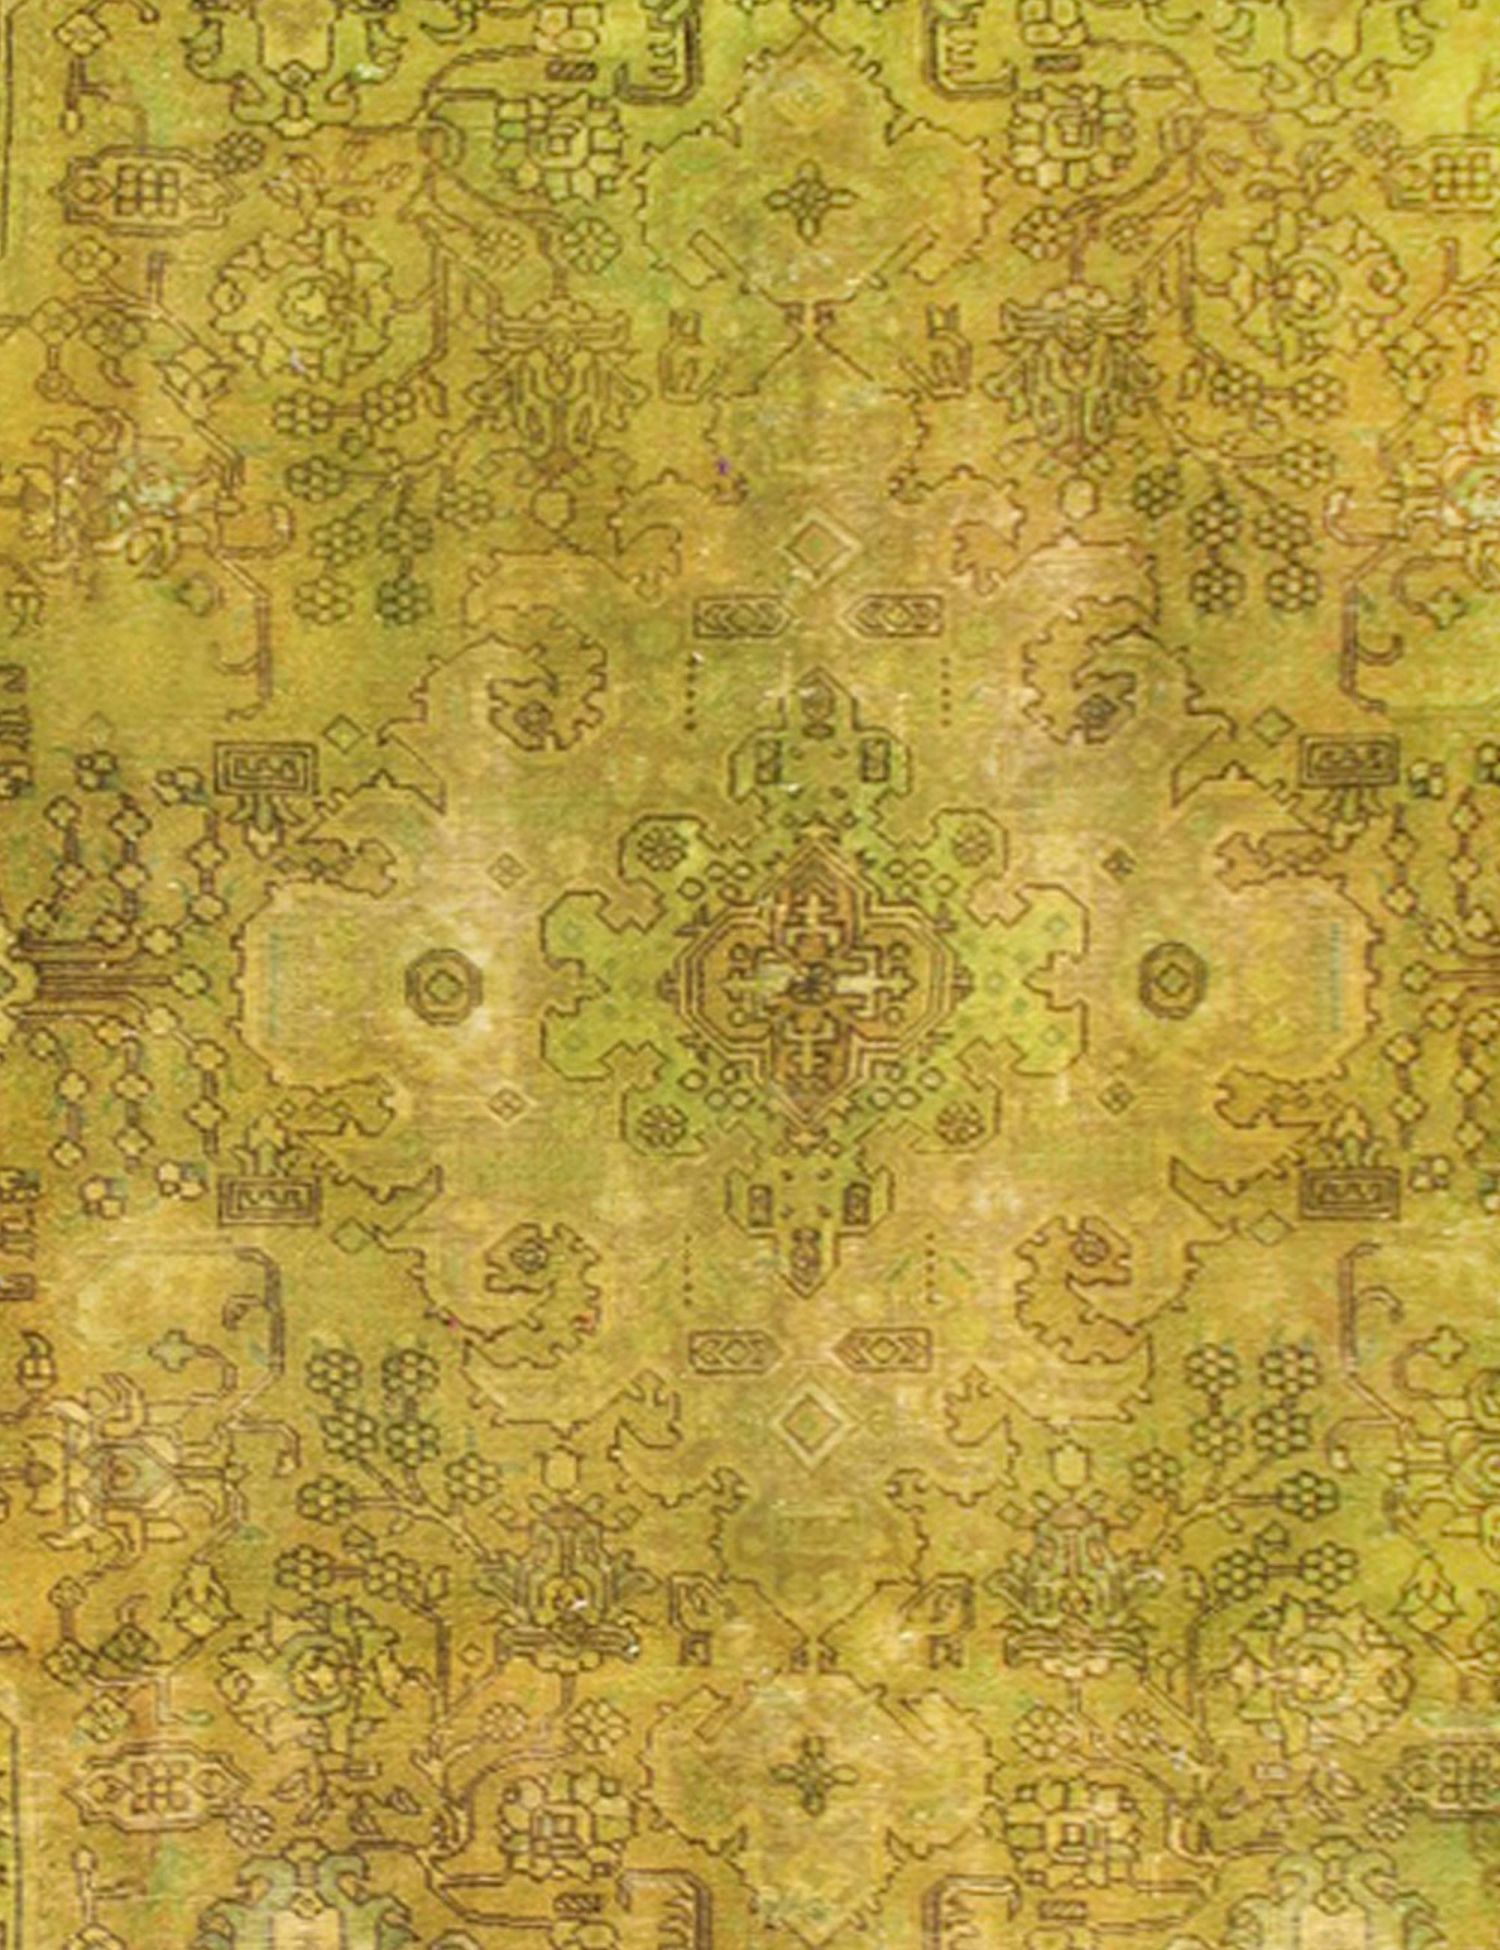 Persischer Vintage Teppich  grün <br/>295 x 220 cm